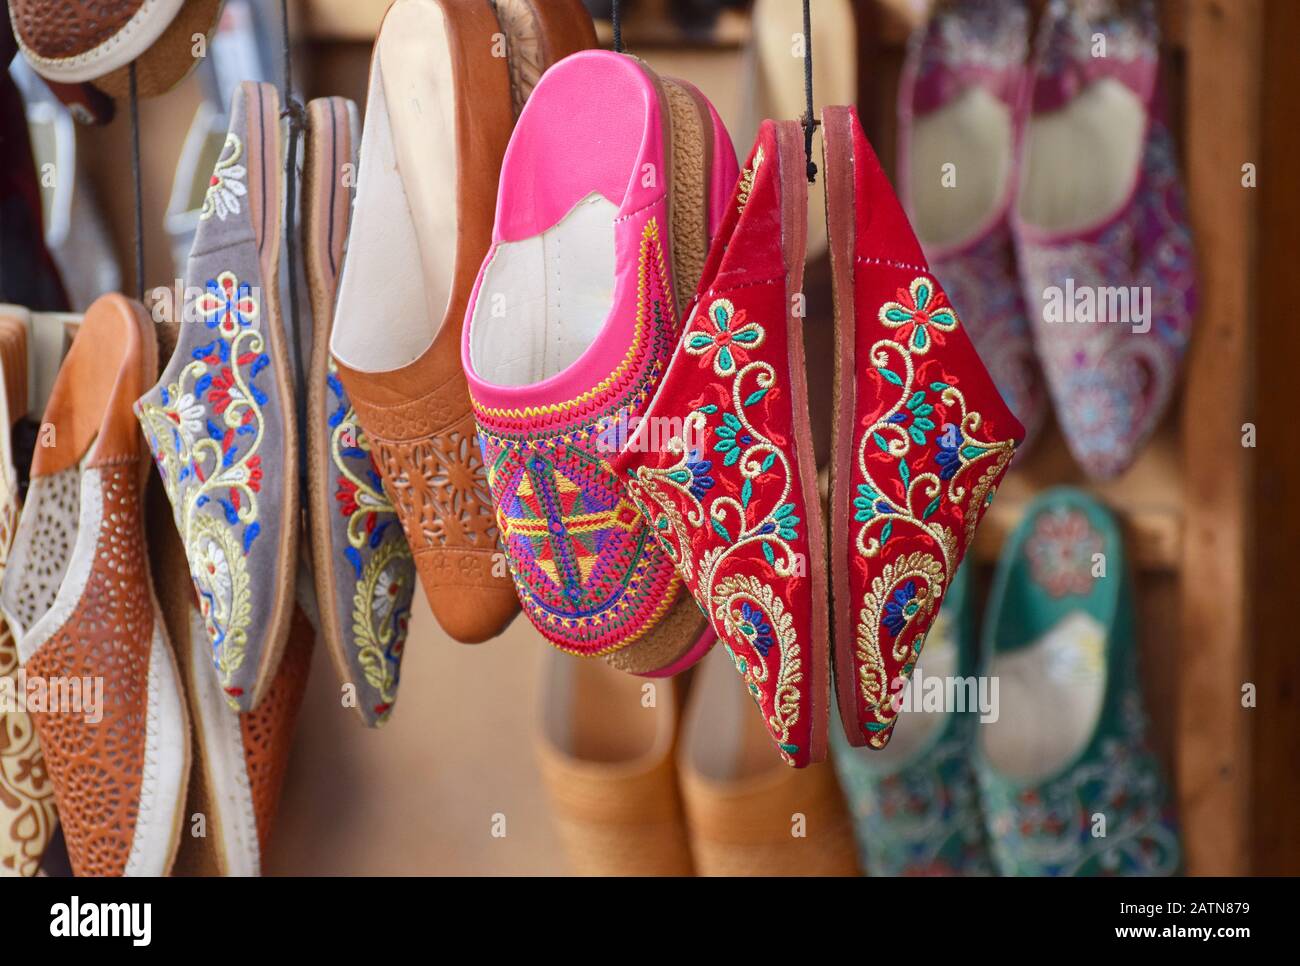 Pantofole marocchine ricamate dai colori vivaci chiamate ciabatte babouche appese a coppie su un mercato in un souk di Marrakesh Foto Stock